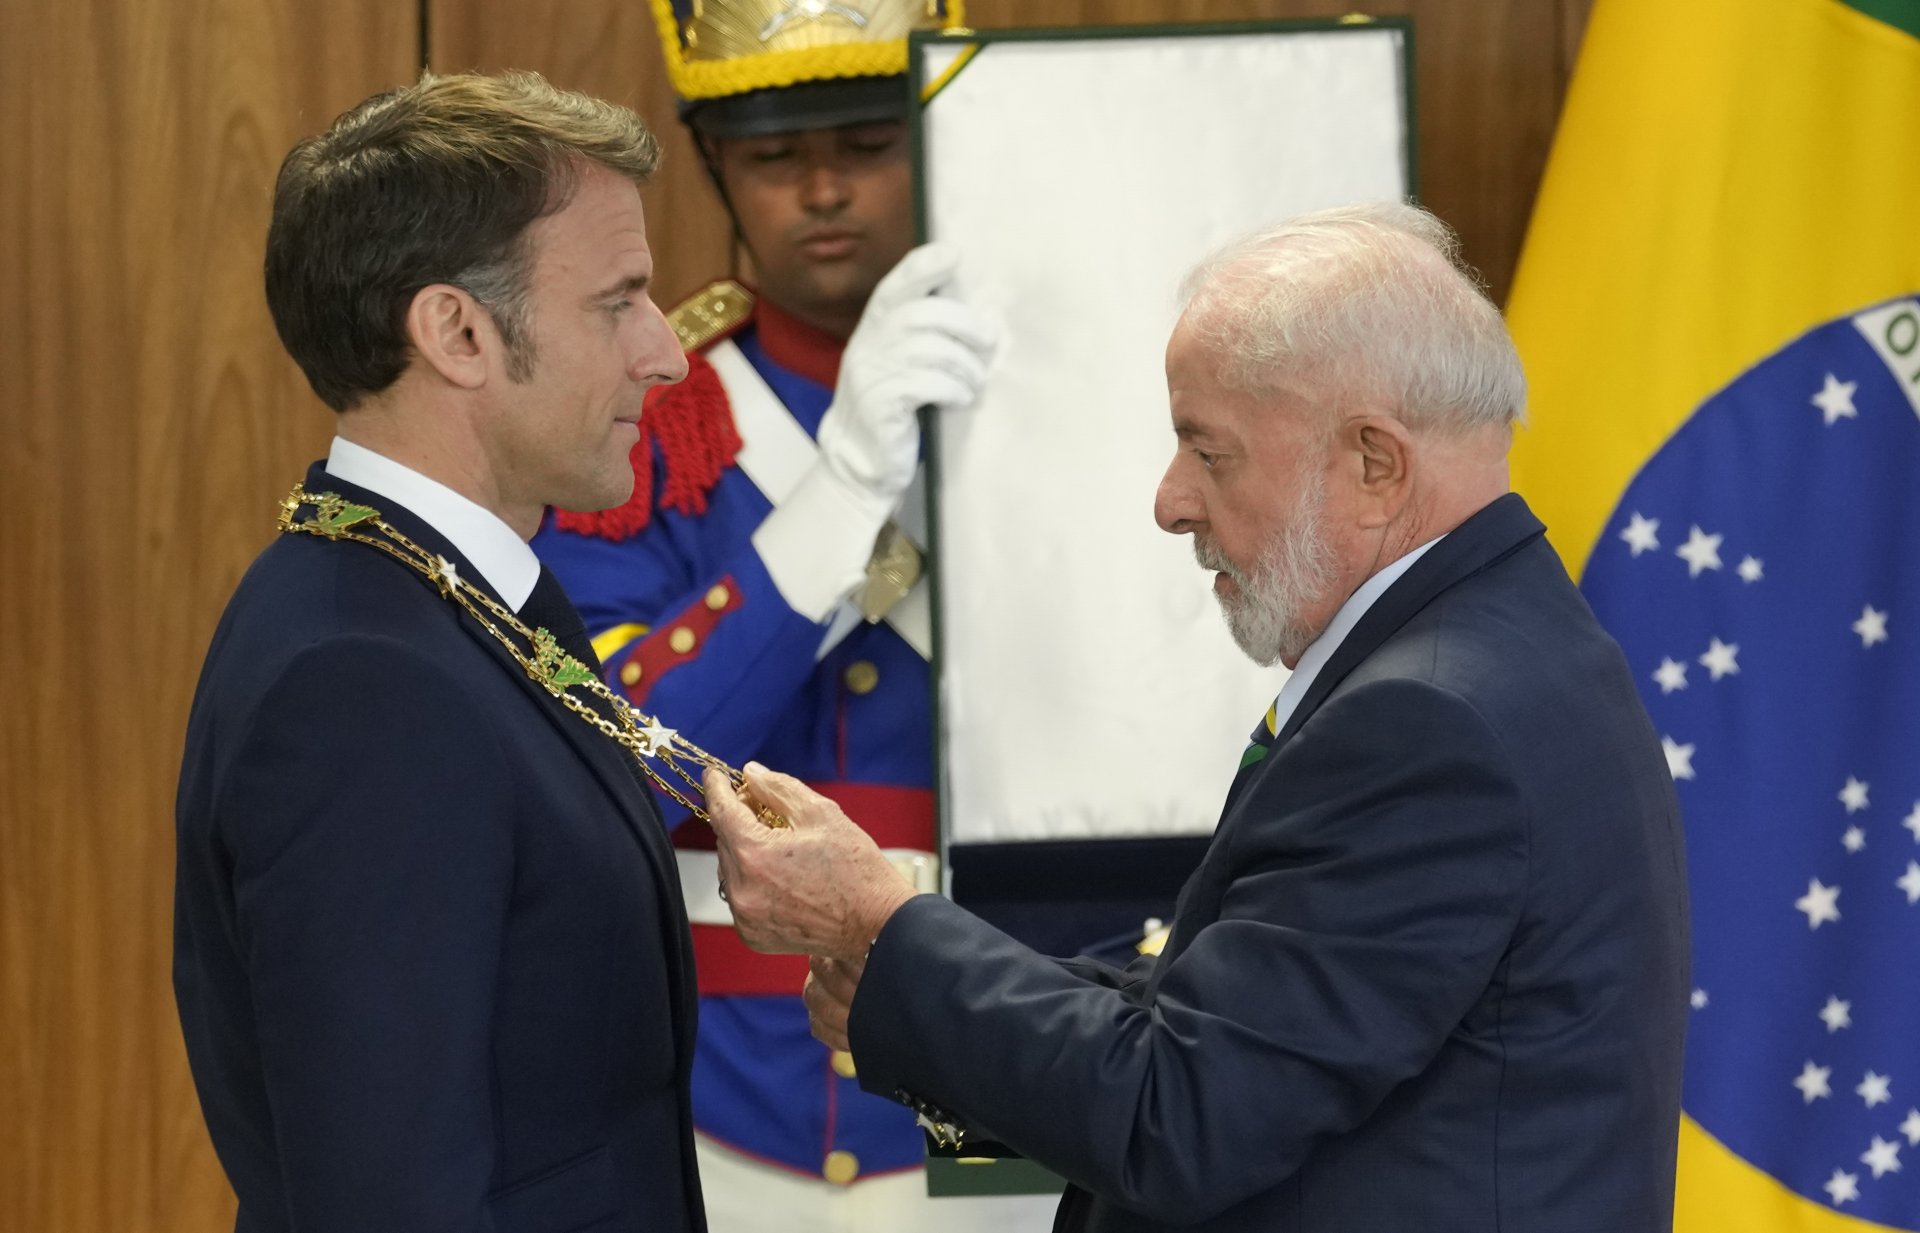 Вчера Лула връчи на Макрон най-високото отличие за човек, който не е гражданин на Бразилия, и окачи медал на врата му